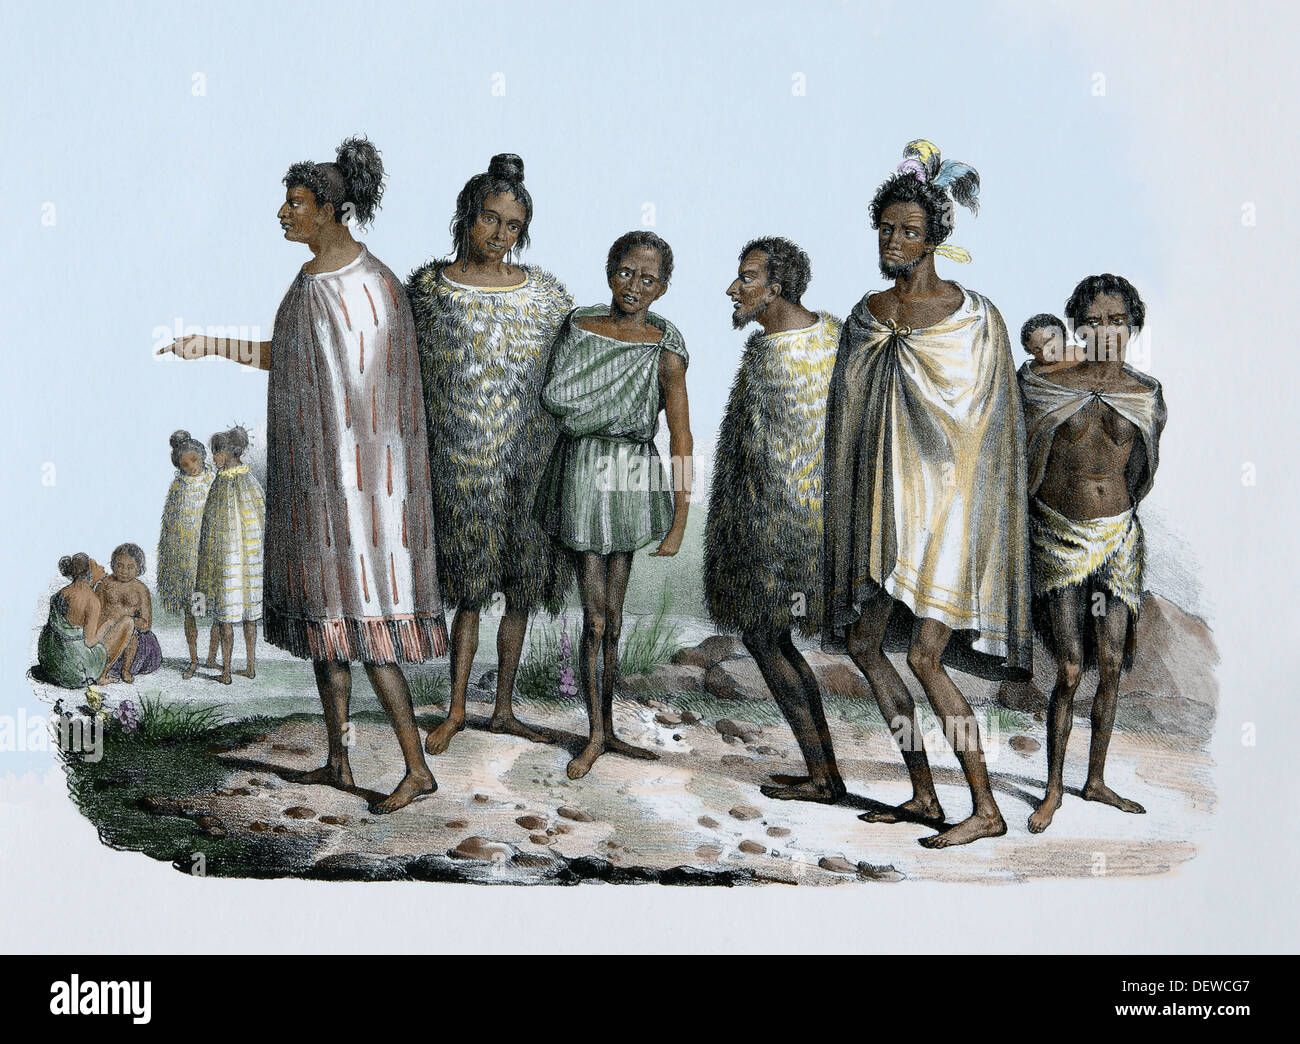 Islas del Pacífico. Los neozelandeses, c. 1840. Los indígenas pueblo polinesio. La cultura maorí. Grabado en color. Siglo xix. Foto de stock